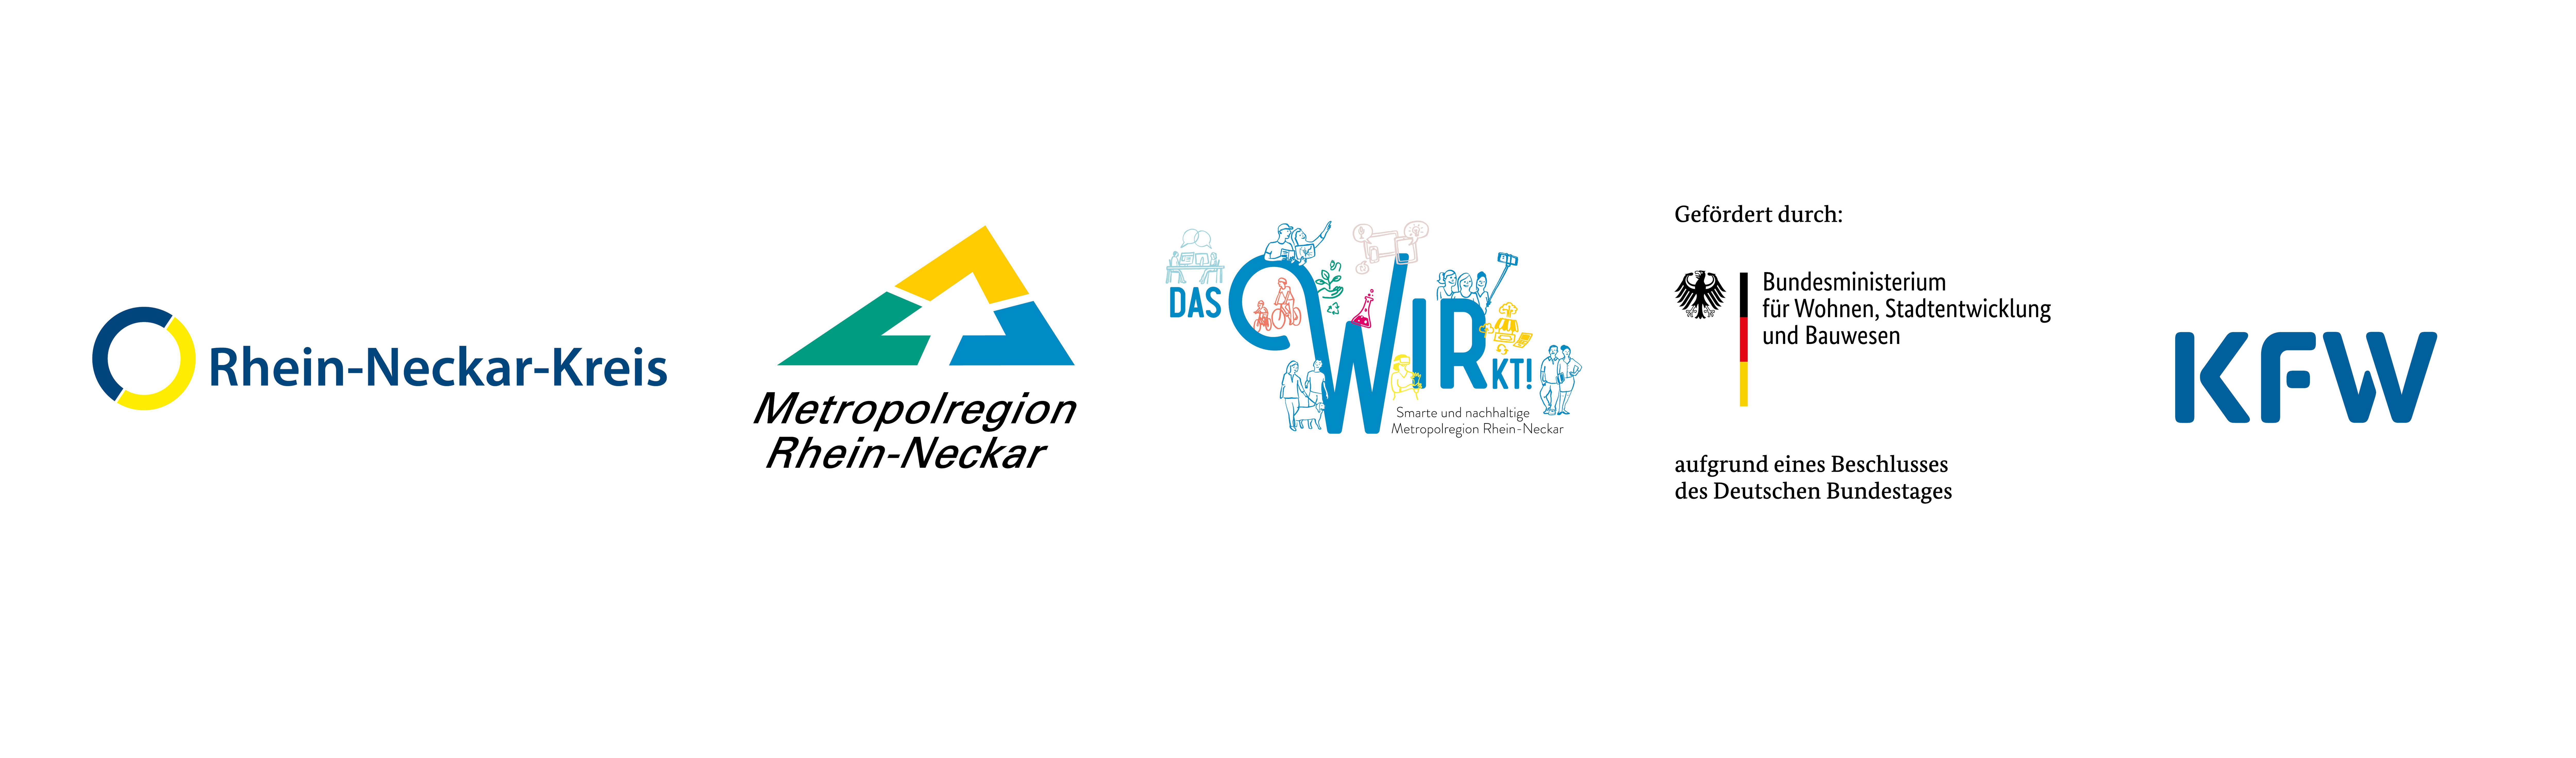 Logos von RNK, MRN, Das Wir Wirkt, dem Bundesministerium für Wohnen, Stadtentwicklung und Bauwesen und der KFW